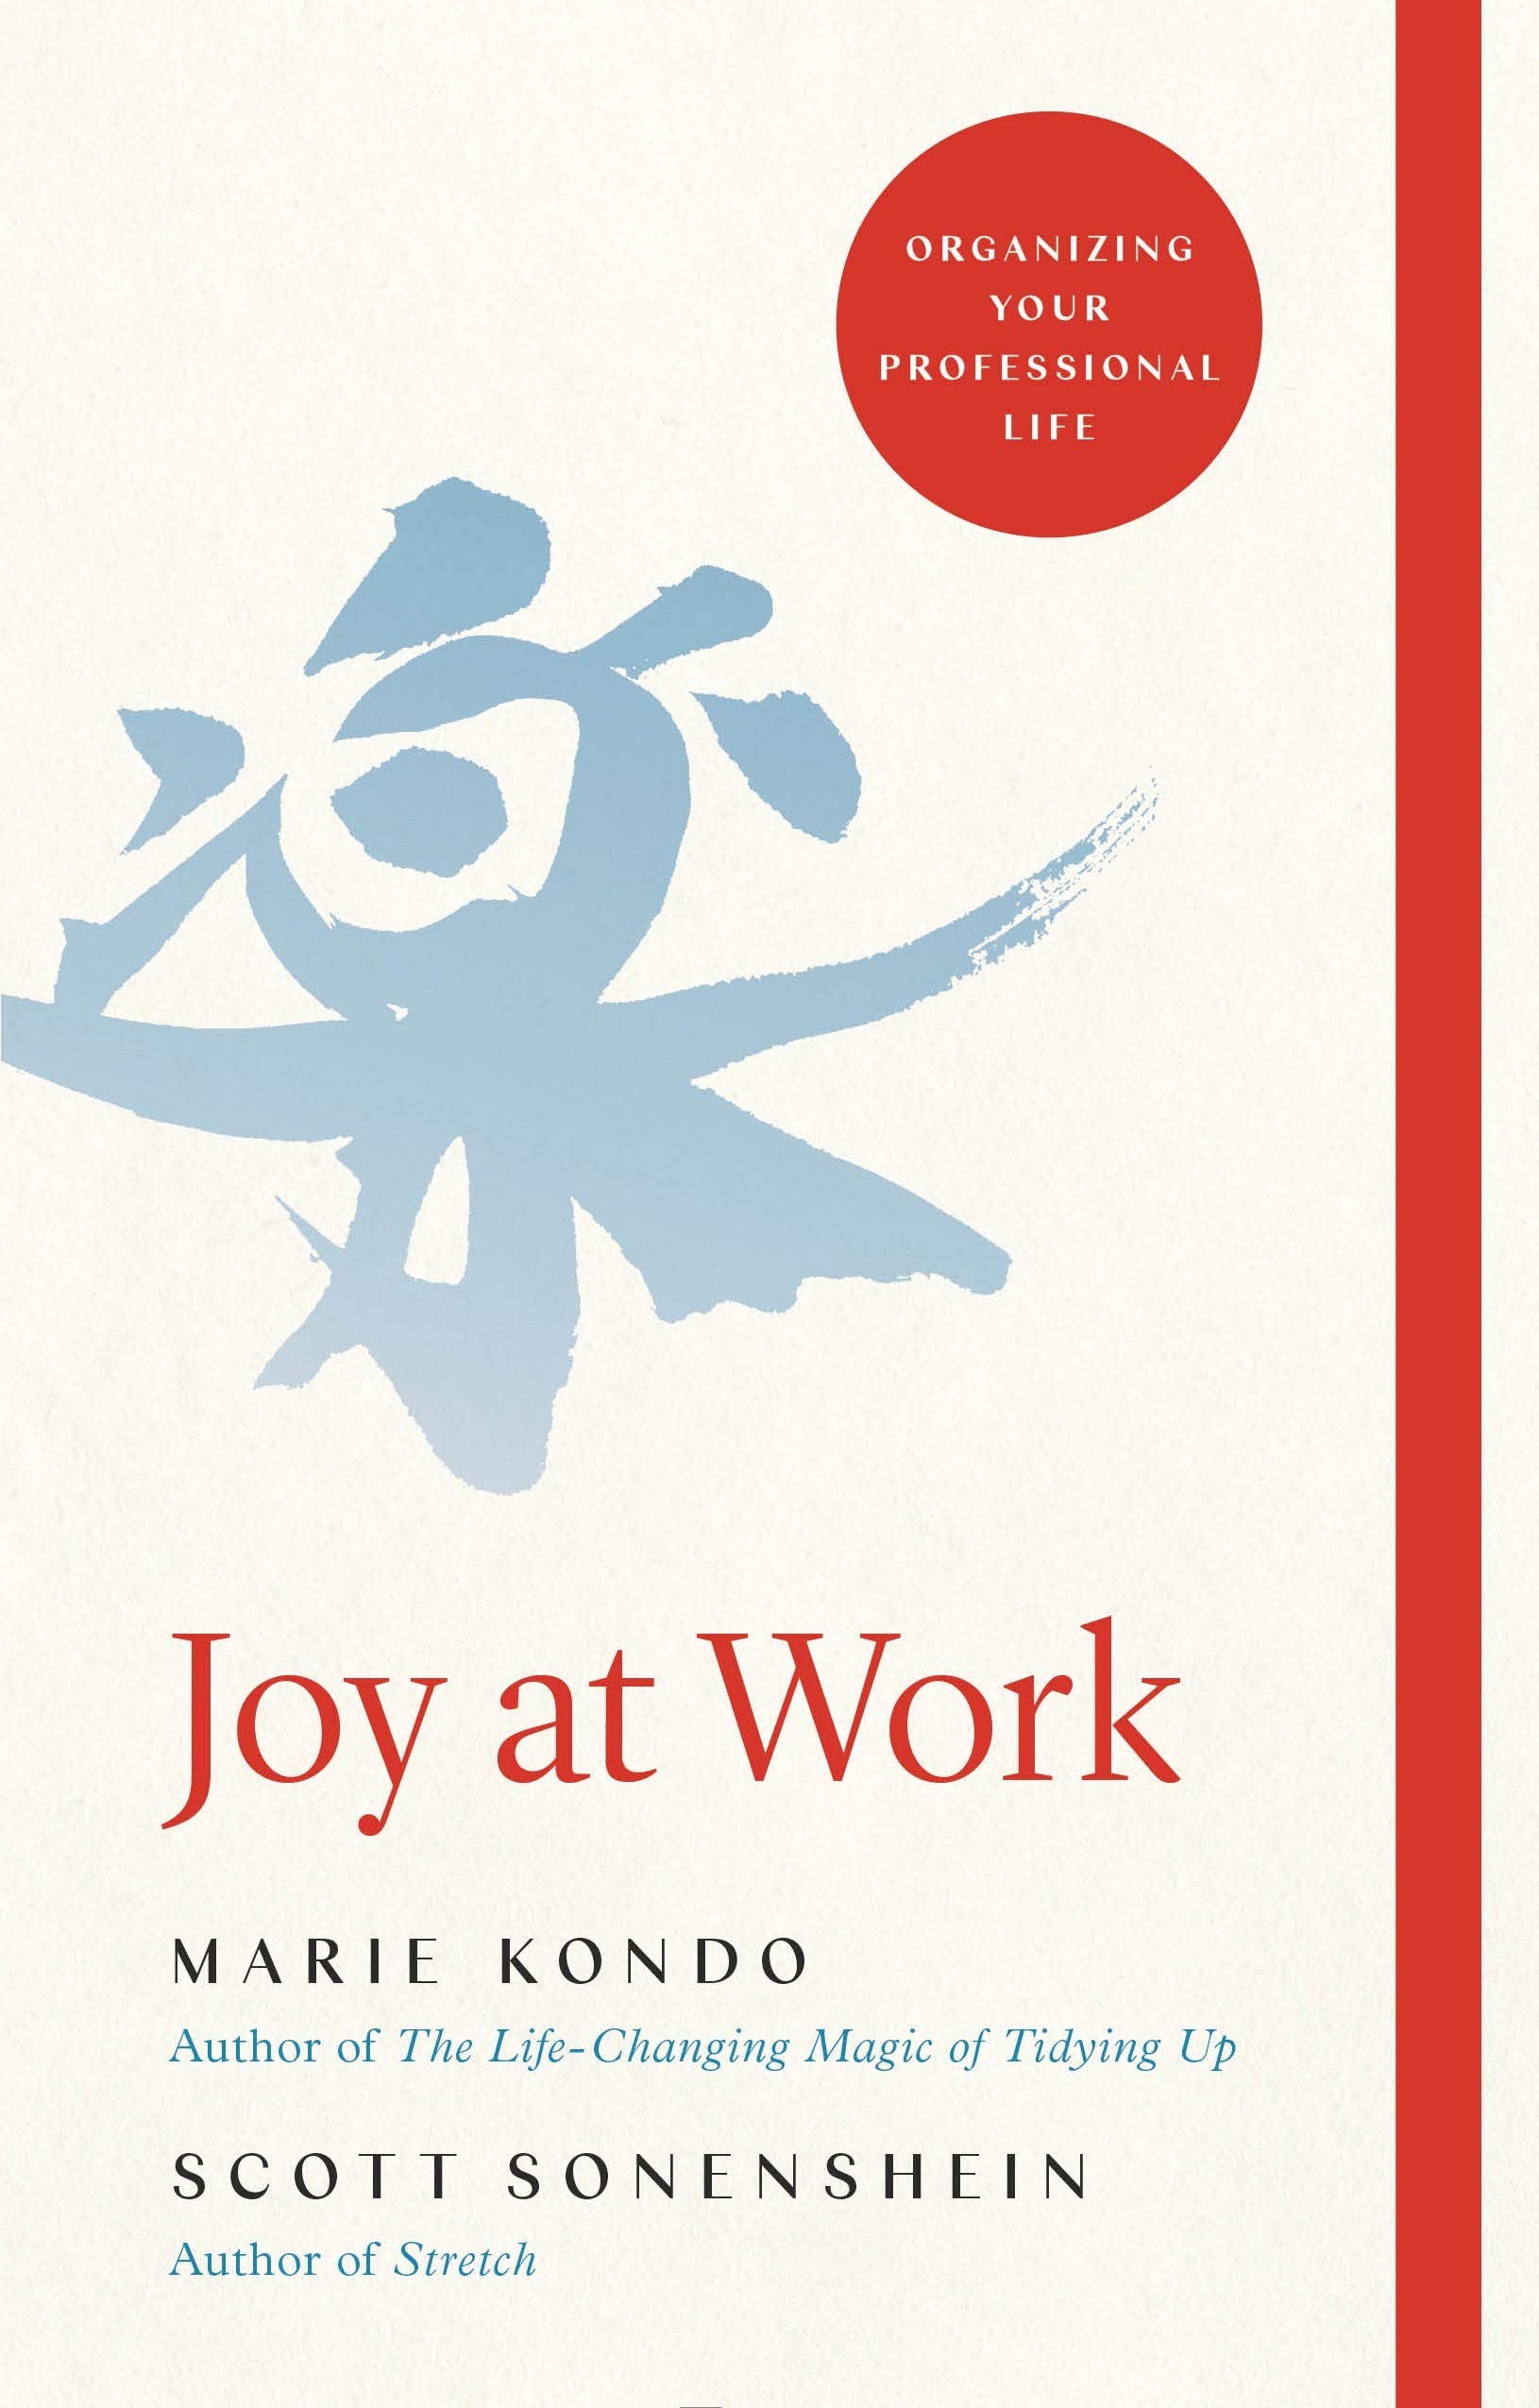 Joy at Work: Or...